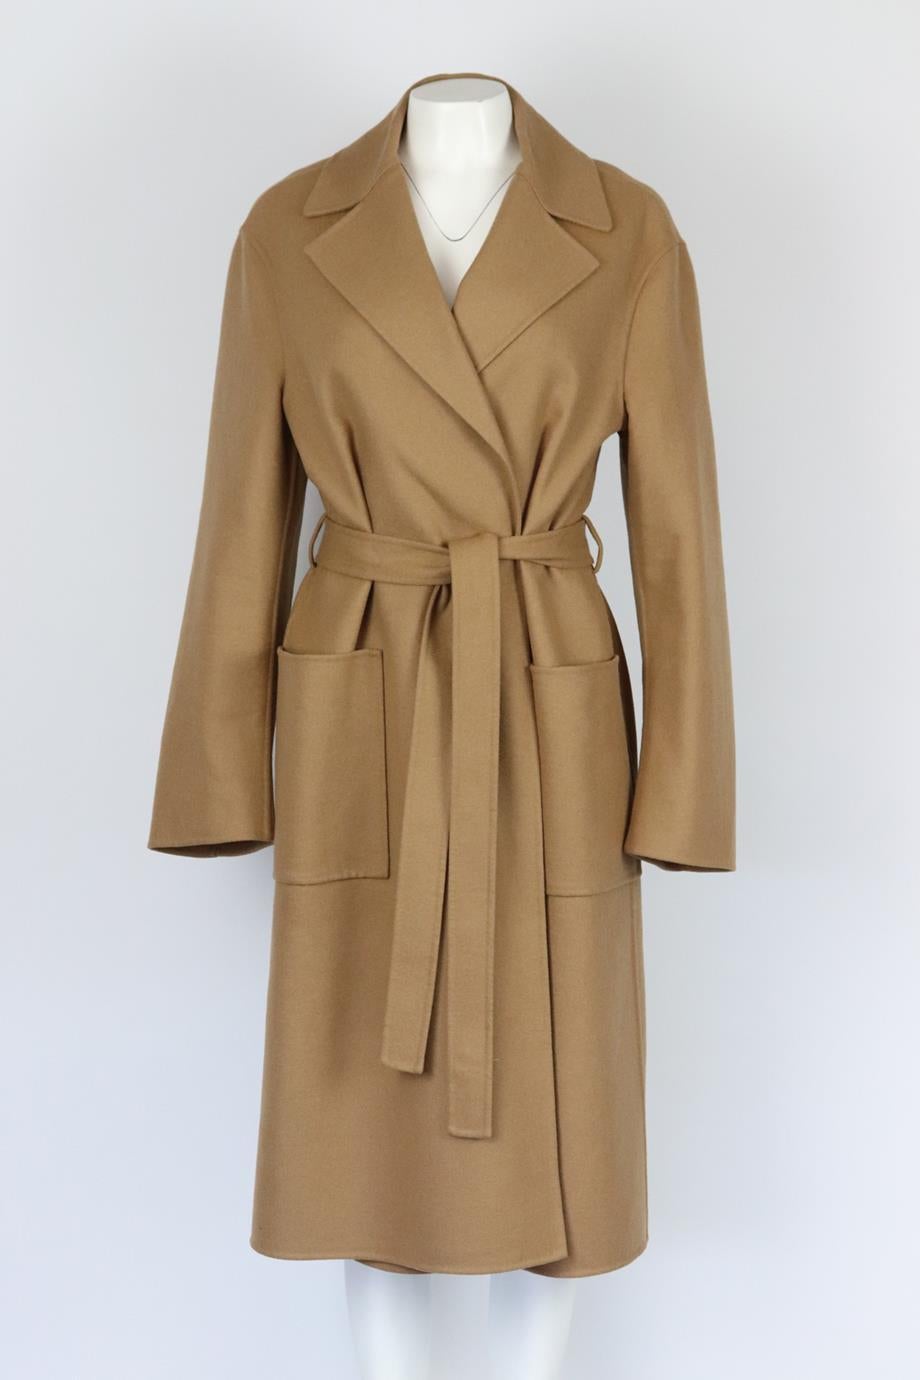 Christian Dior belted wool blend coat. Camel. Long sleeve, v-neck. Belt fastening at front. 82% Wool, 15% rabbit hair, 2% polyamide, 1% elastane. Size: FR 44 (UK 16, US 12, IT 48). Shoulder to shoulder: 20 in. Bust: 46 in. Waist: 48 in. Hips: 50 in.